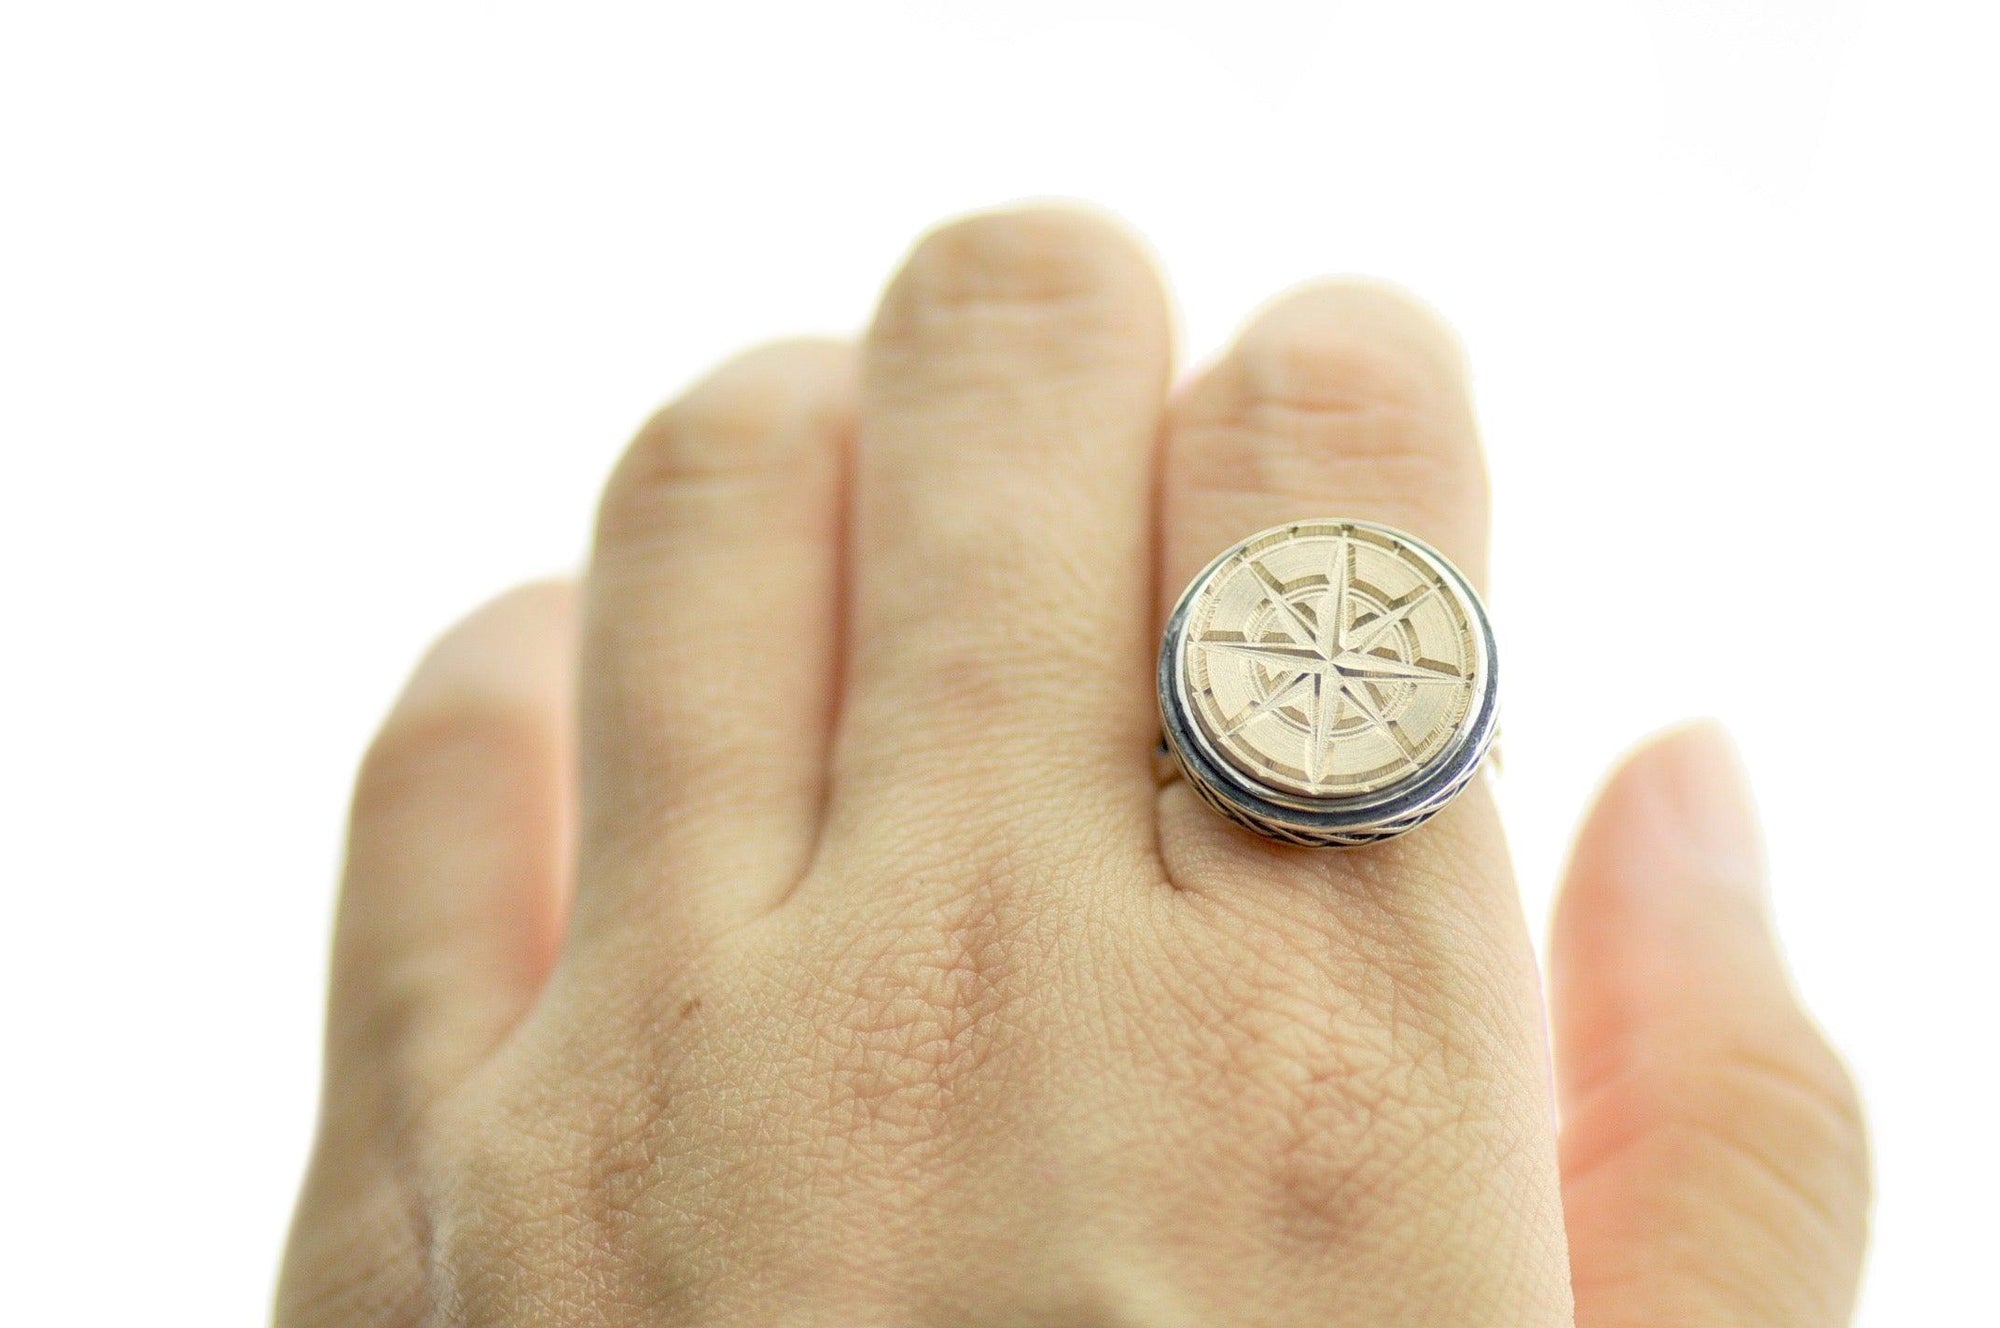 Compass Signet Ring - Backtozero B20 - 15c, 15mm, 15mm ring, accessory, Compass, her, jewelry, ring, signet ring, size 10, size 5, size 6, size 7, size 8, size 9, wax seal, wax seal stamp